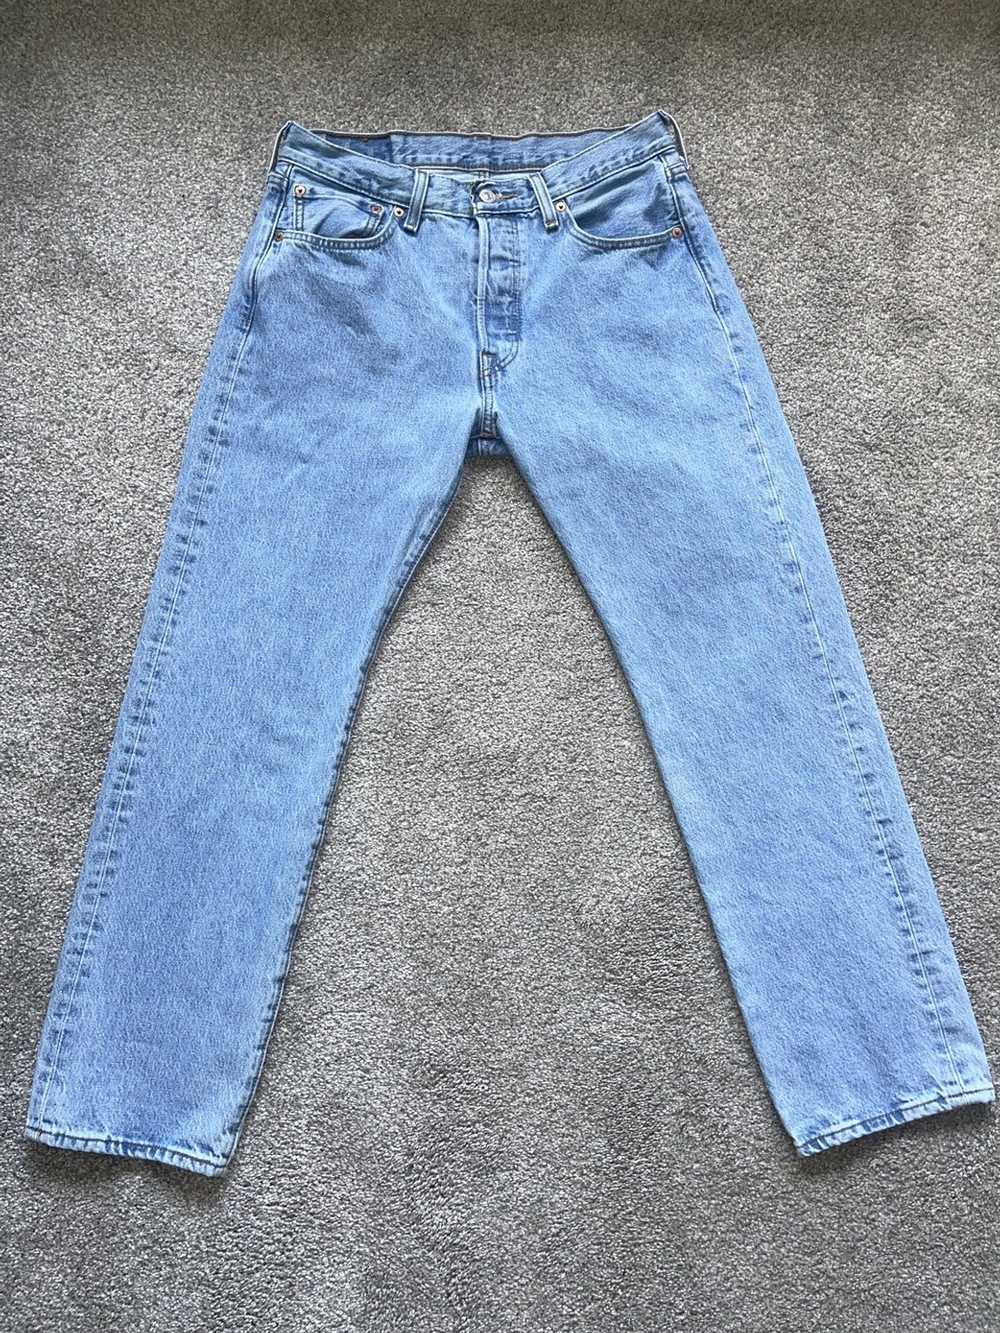 Levi's Levi’s 501 Jeans - image 1